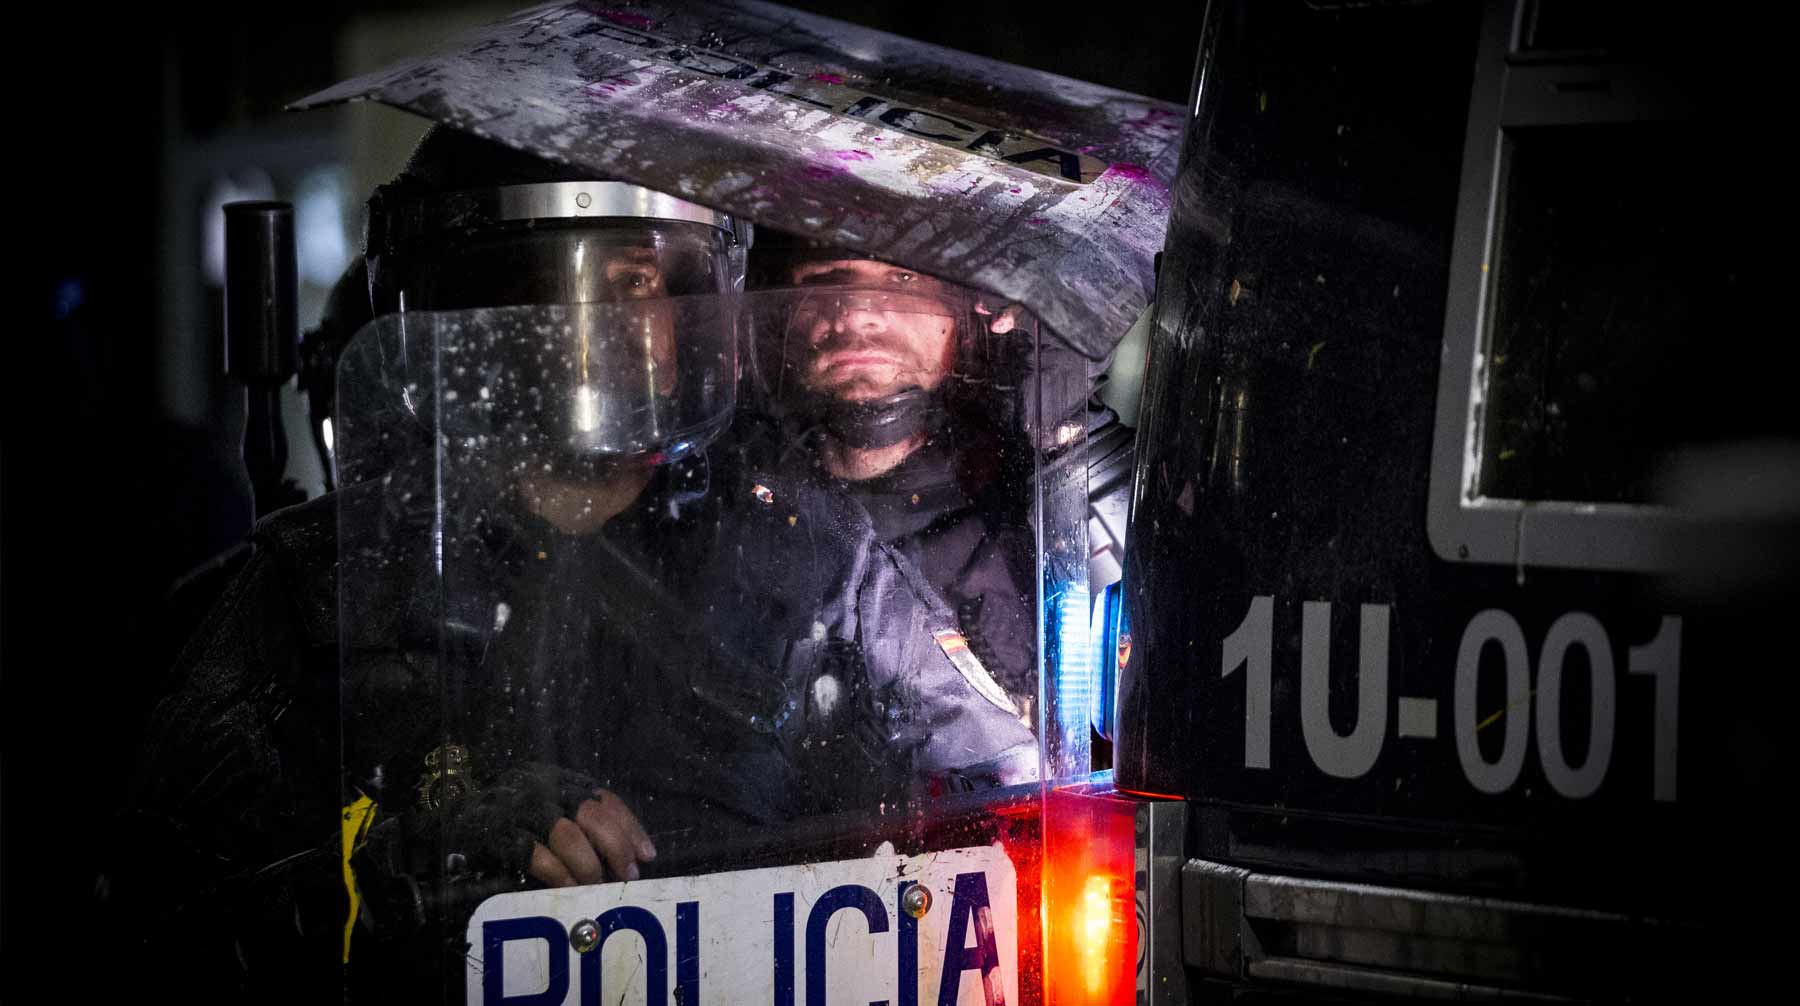 Испанская полиция задержала по данному делу еще трех человек: бывшую супругу и сына мужчины, а также испанского адвоката Фото: © Global Look Press